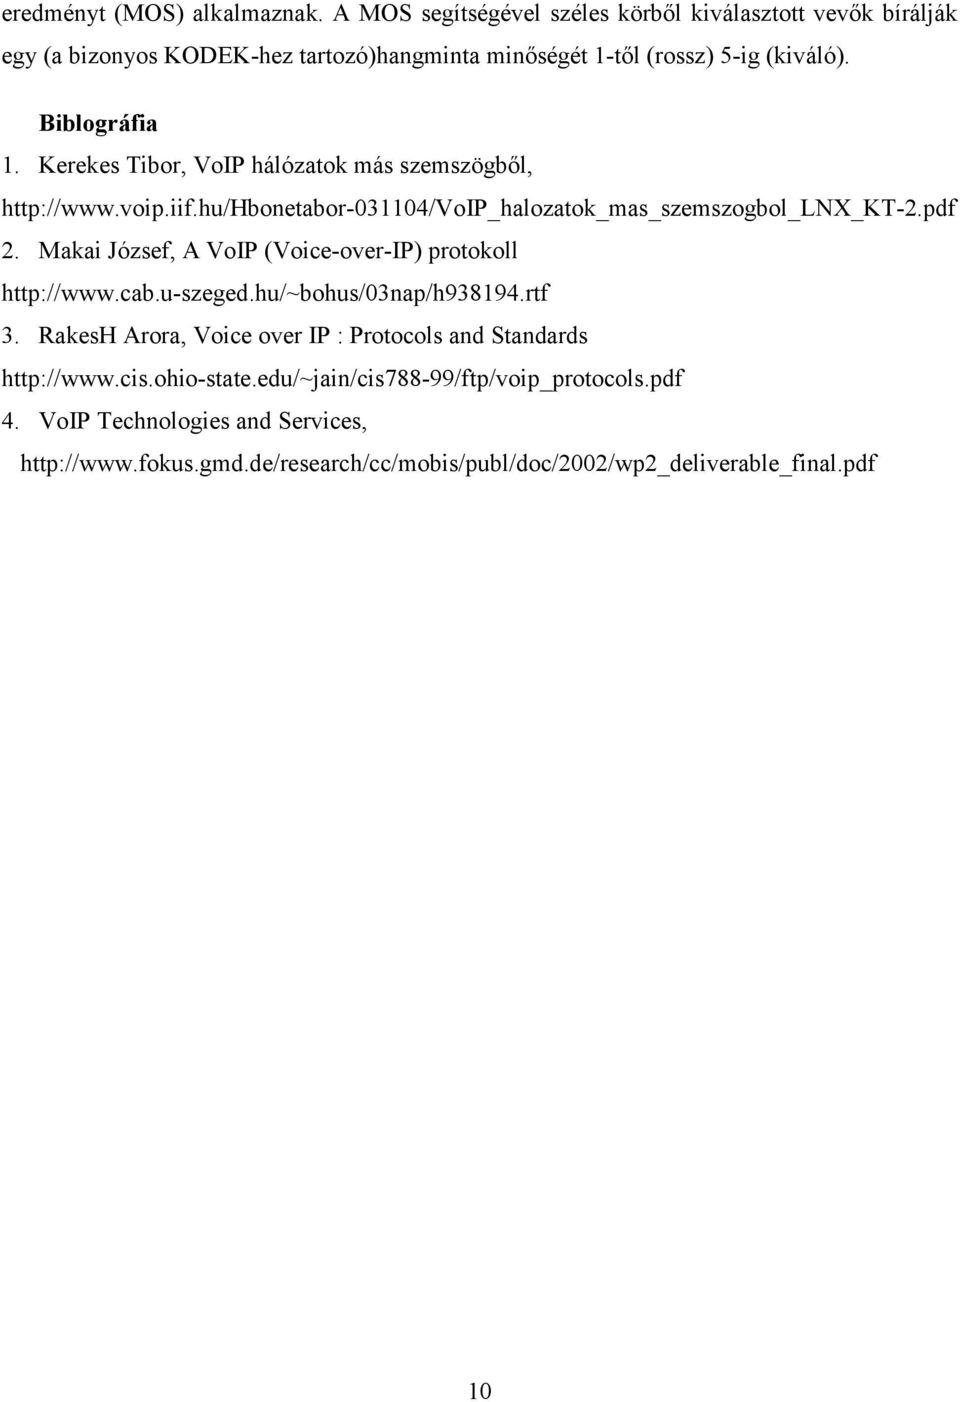 Kerekes Tibor, VoIP hálózatok más szemszögből, http://www.voip.iif.hu/hbonetabor-031104/voip_halozatok_mas_szemszogbol_lnx_kt-2.pdf 2.